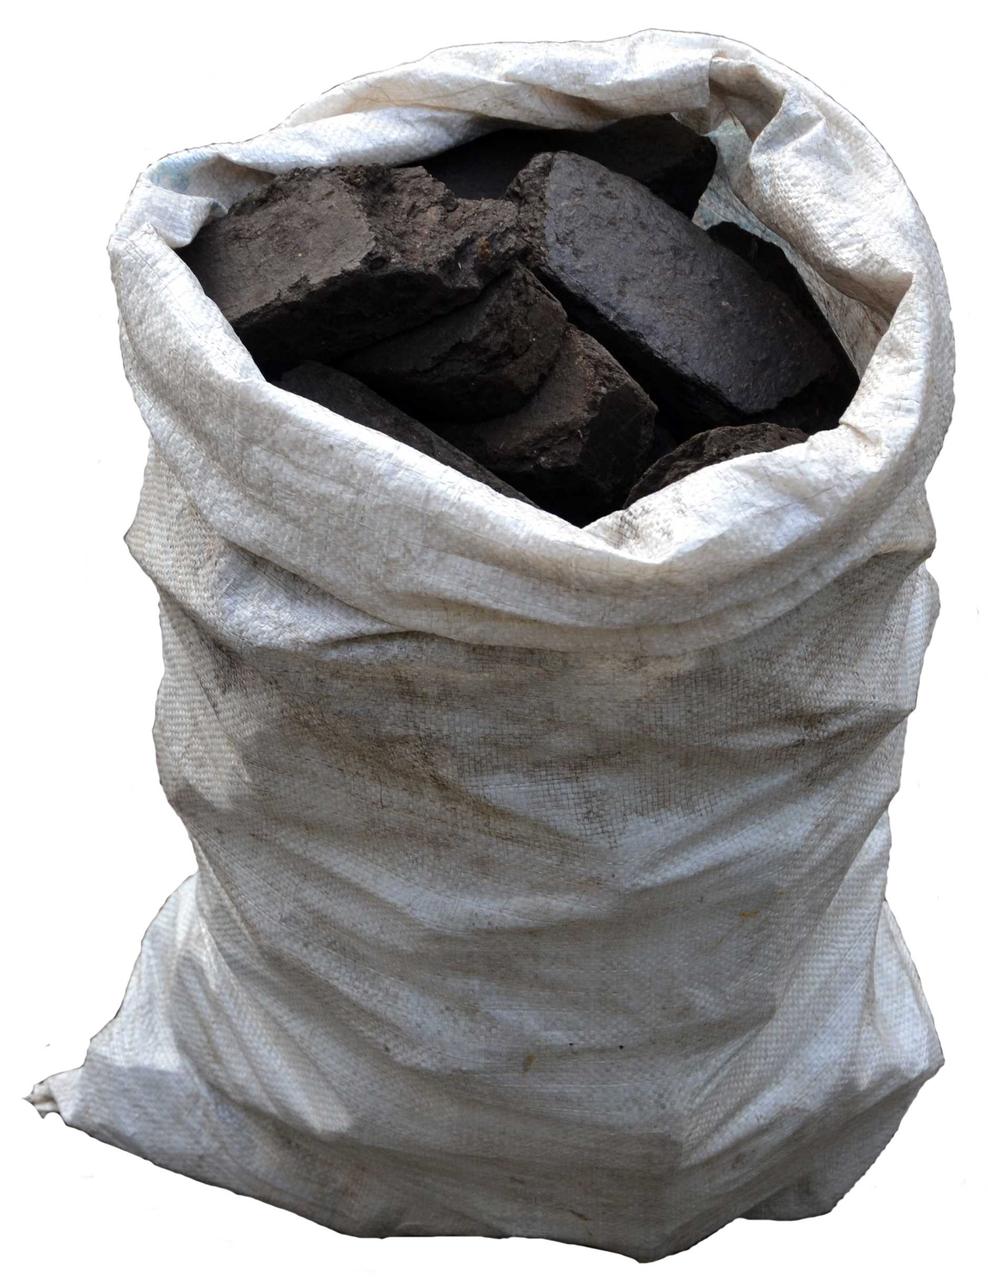 Сколько стоит мешок угля